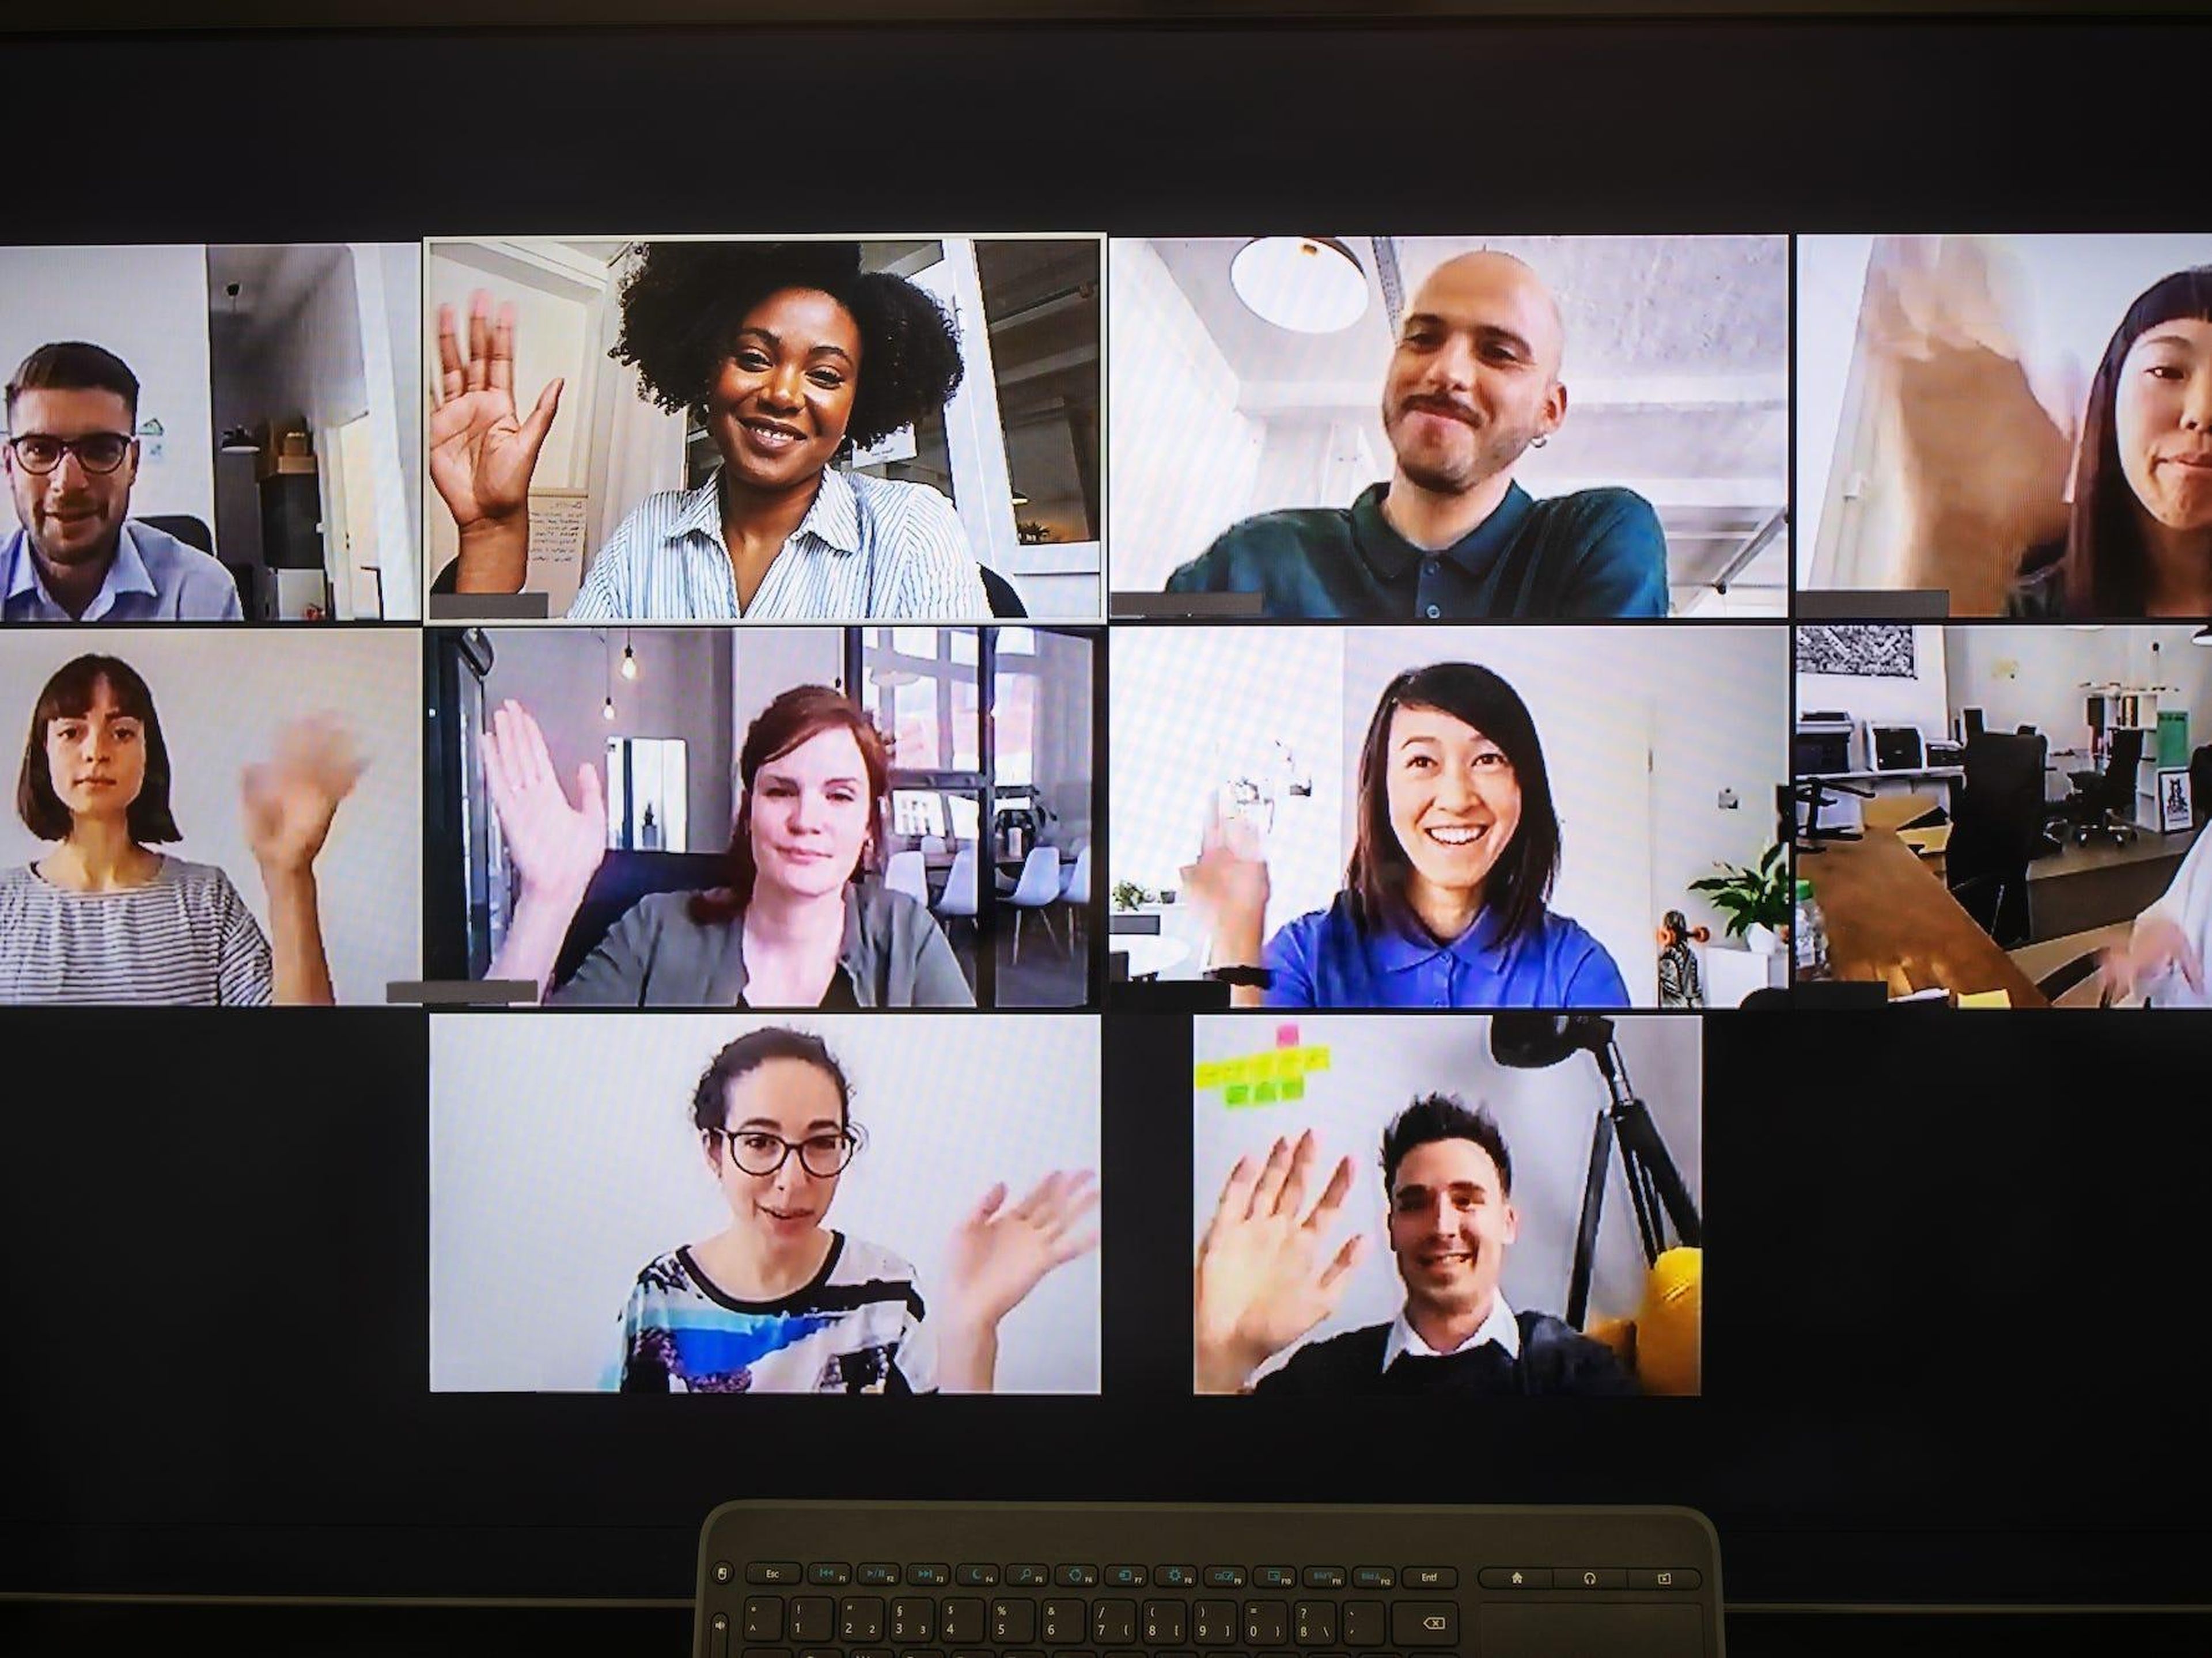 Los empleados utilizan herramientas de videoconferencia como Zoom para conectarse virtualmente.